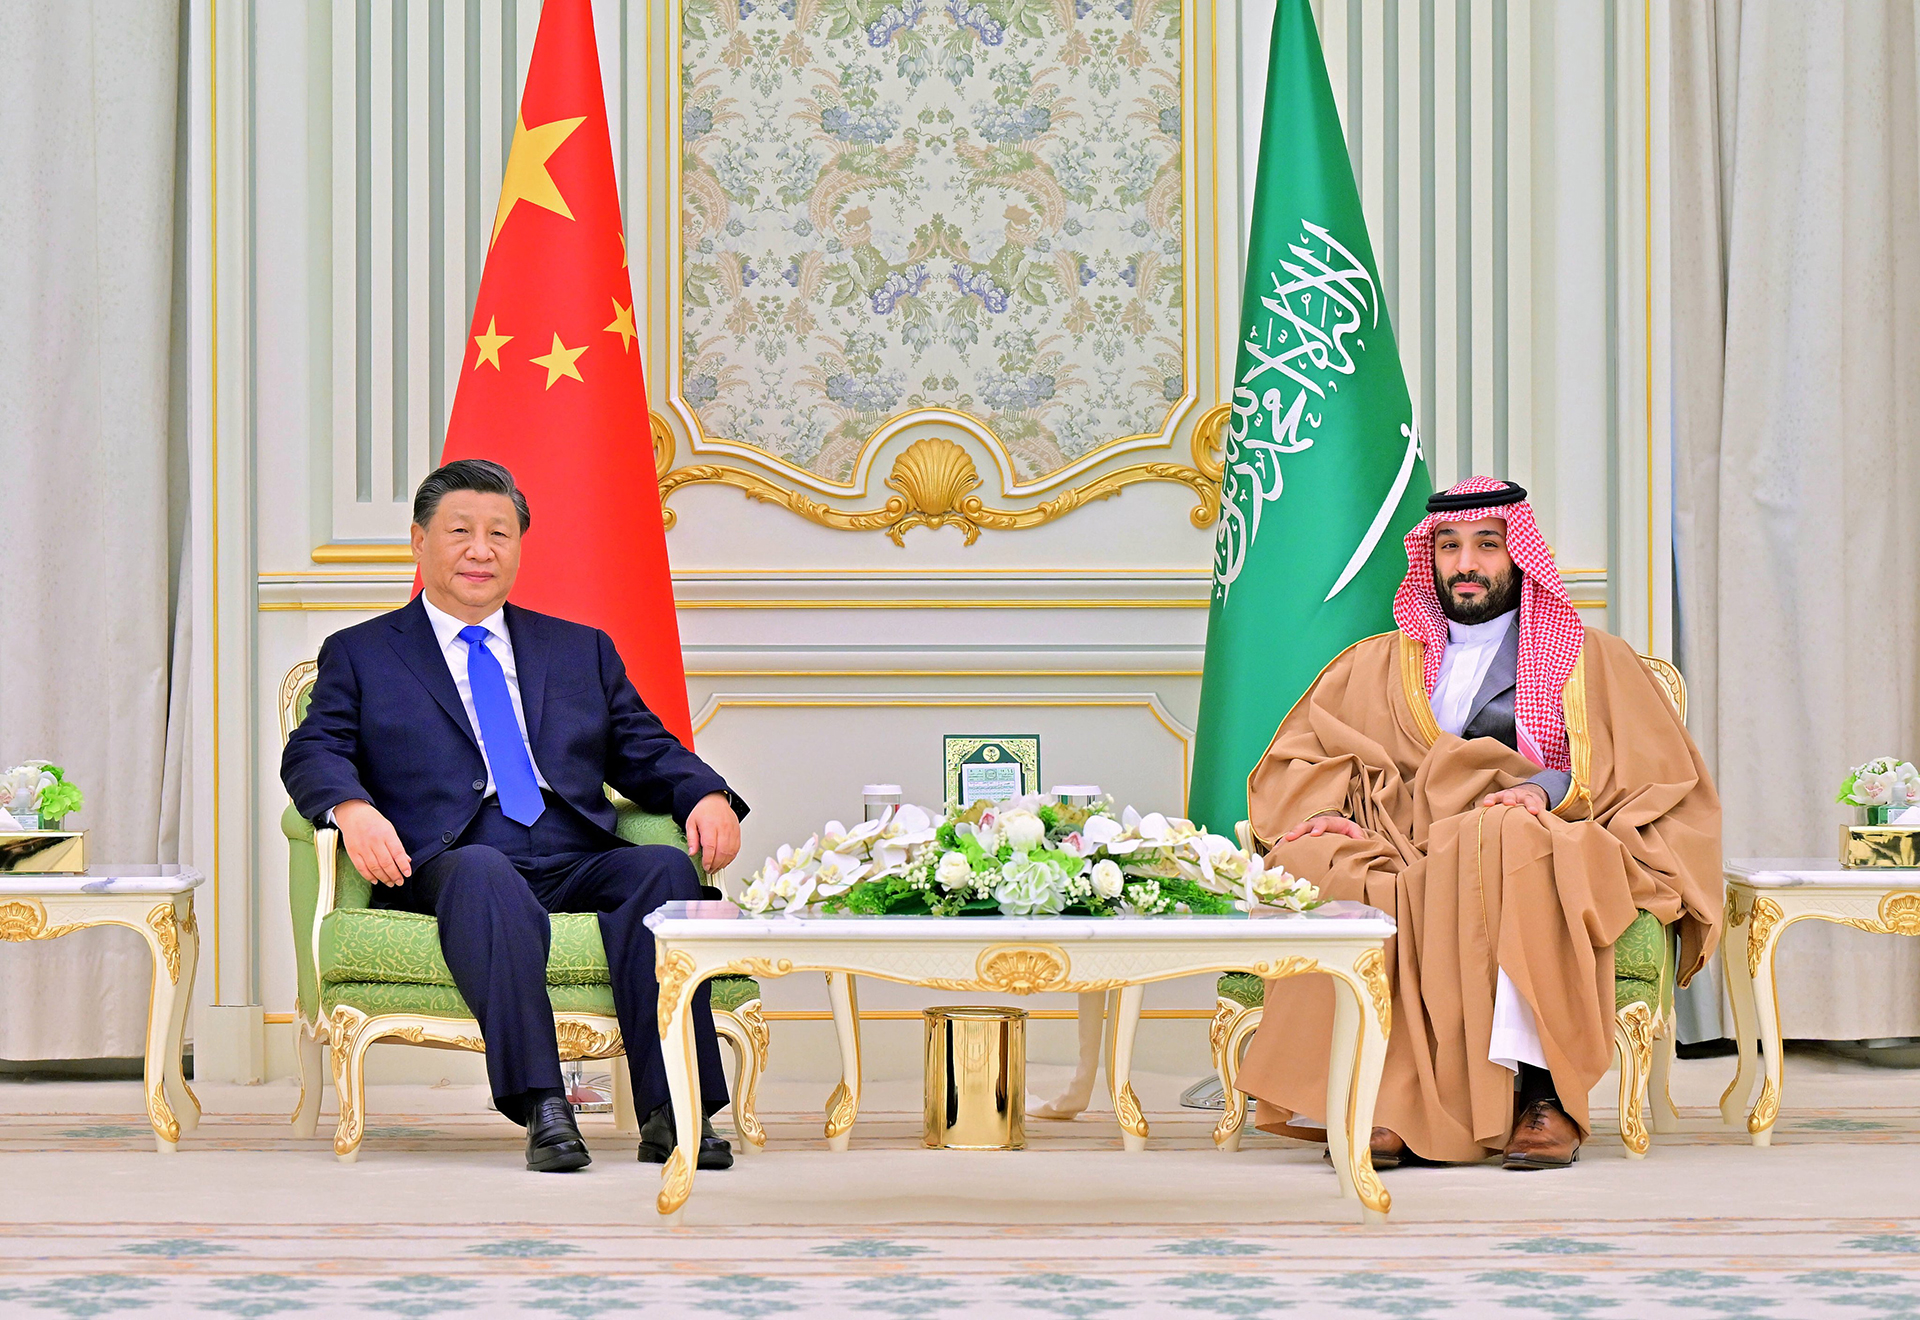 Xi Jinping And Mohammed bin Salman